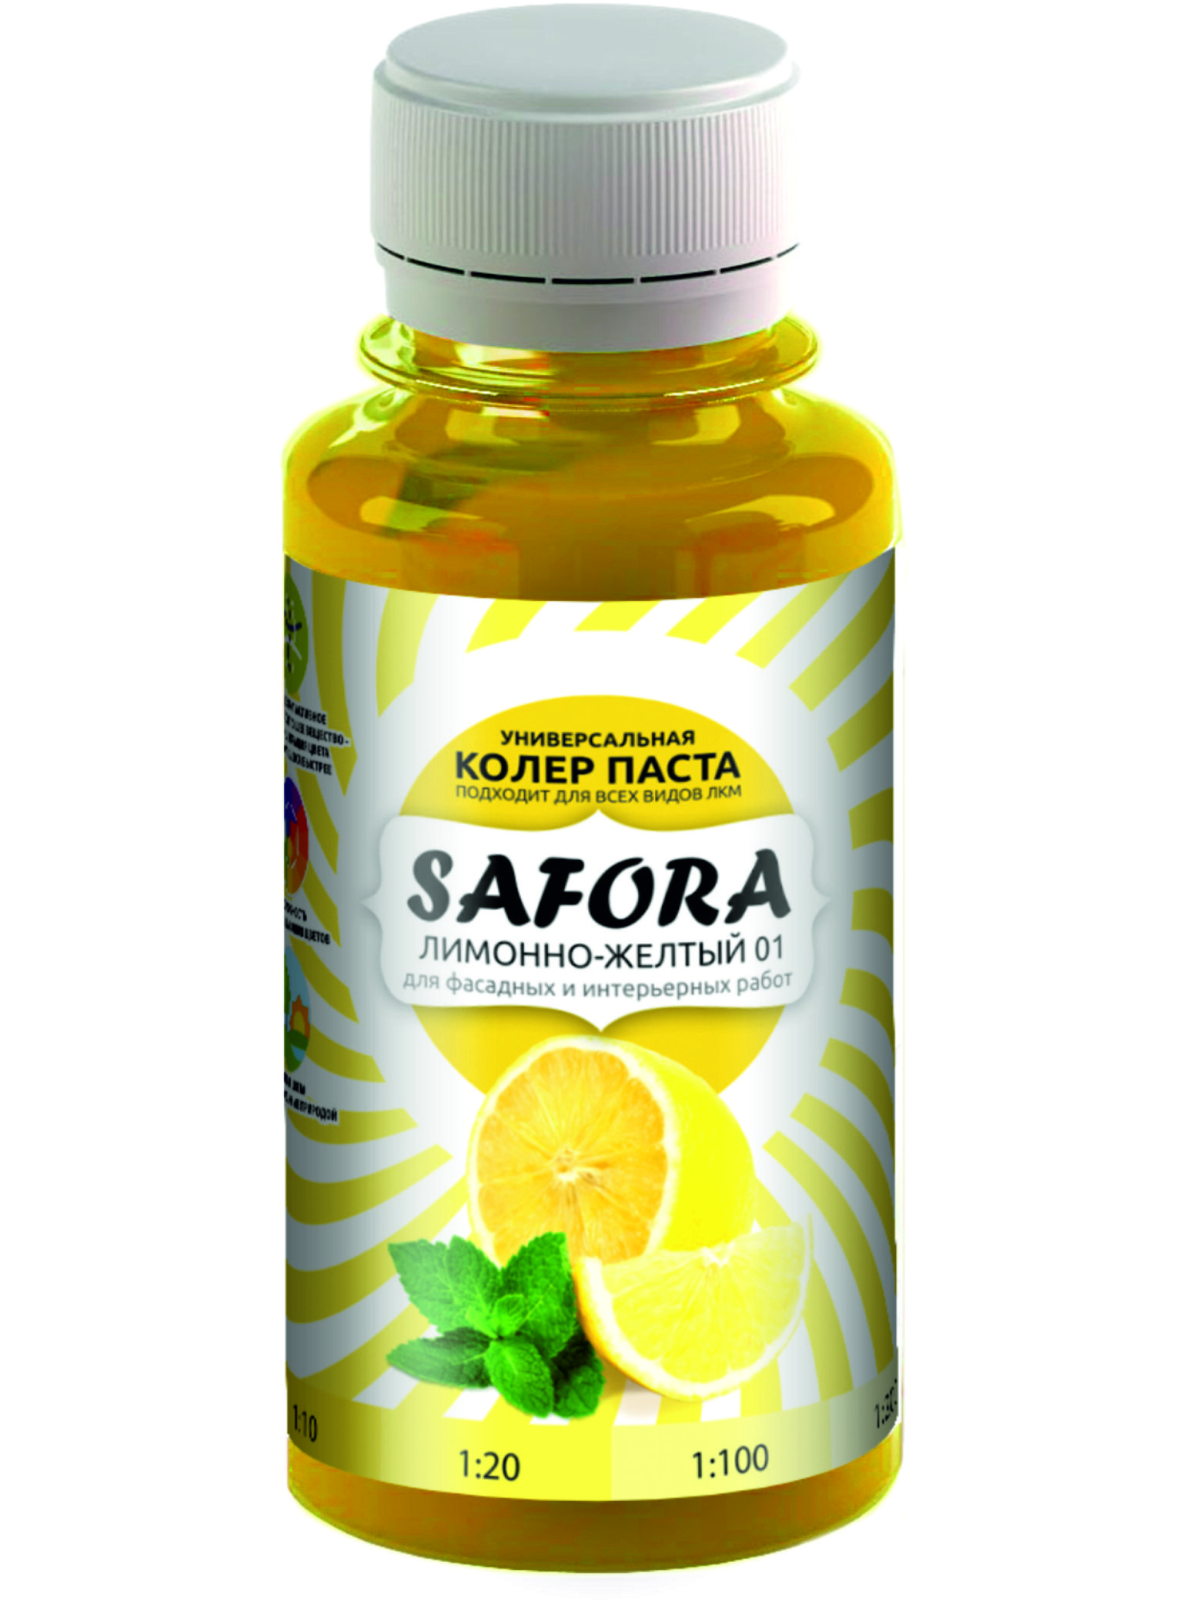 Колеровочная паста SAFORA 01 лимонный, 100 мл колеровочная паста safora 03 пшеничный 100 мл